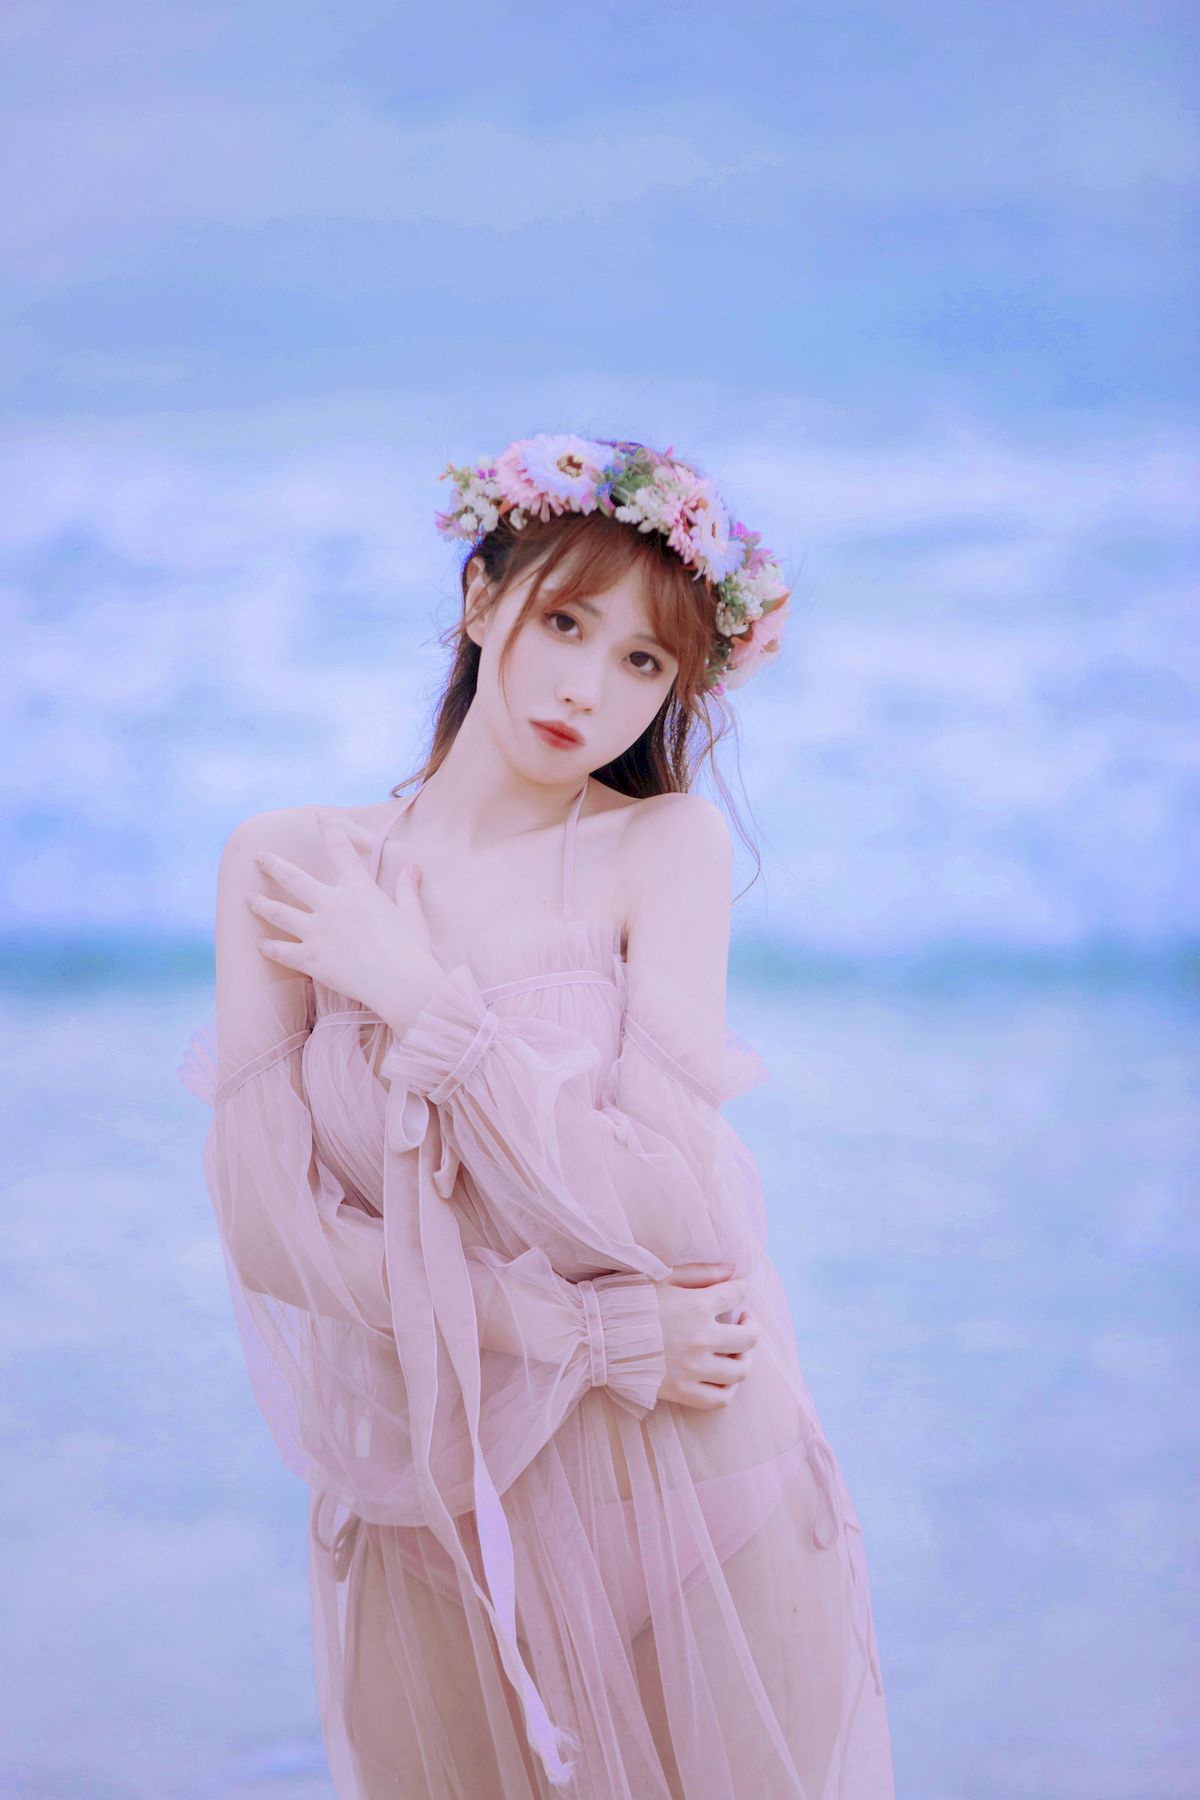 念雪ww - 海边沙滩轻透服饰花仙子主题写真